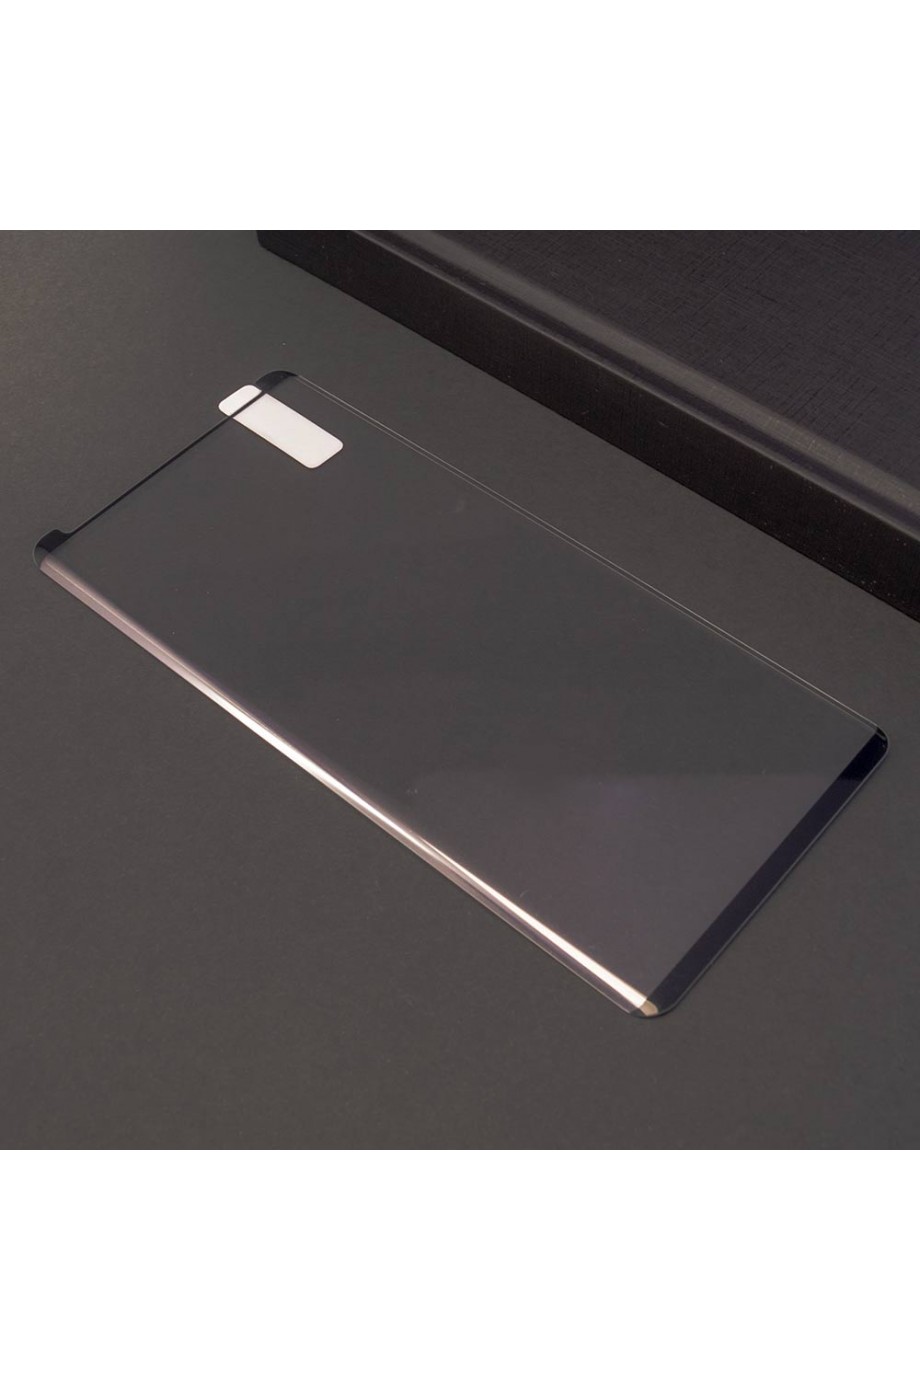 Защитное стекло 3D Mikomo для Samsung Galaxy Note 9, черная рамка, полный клей